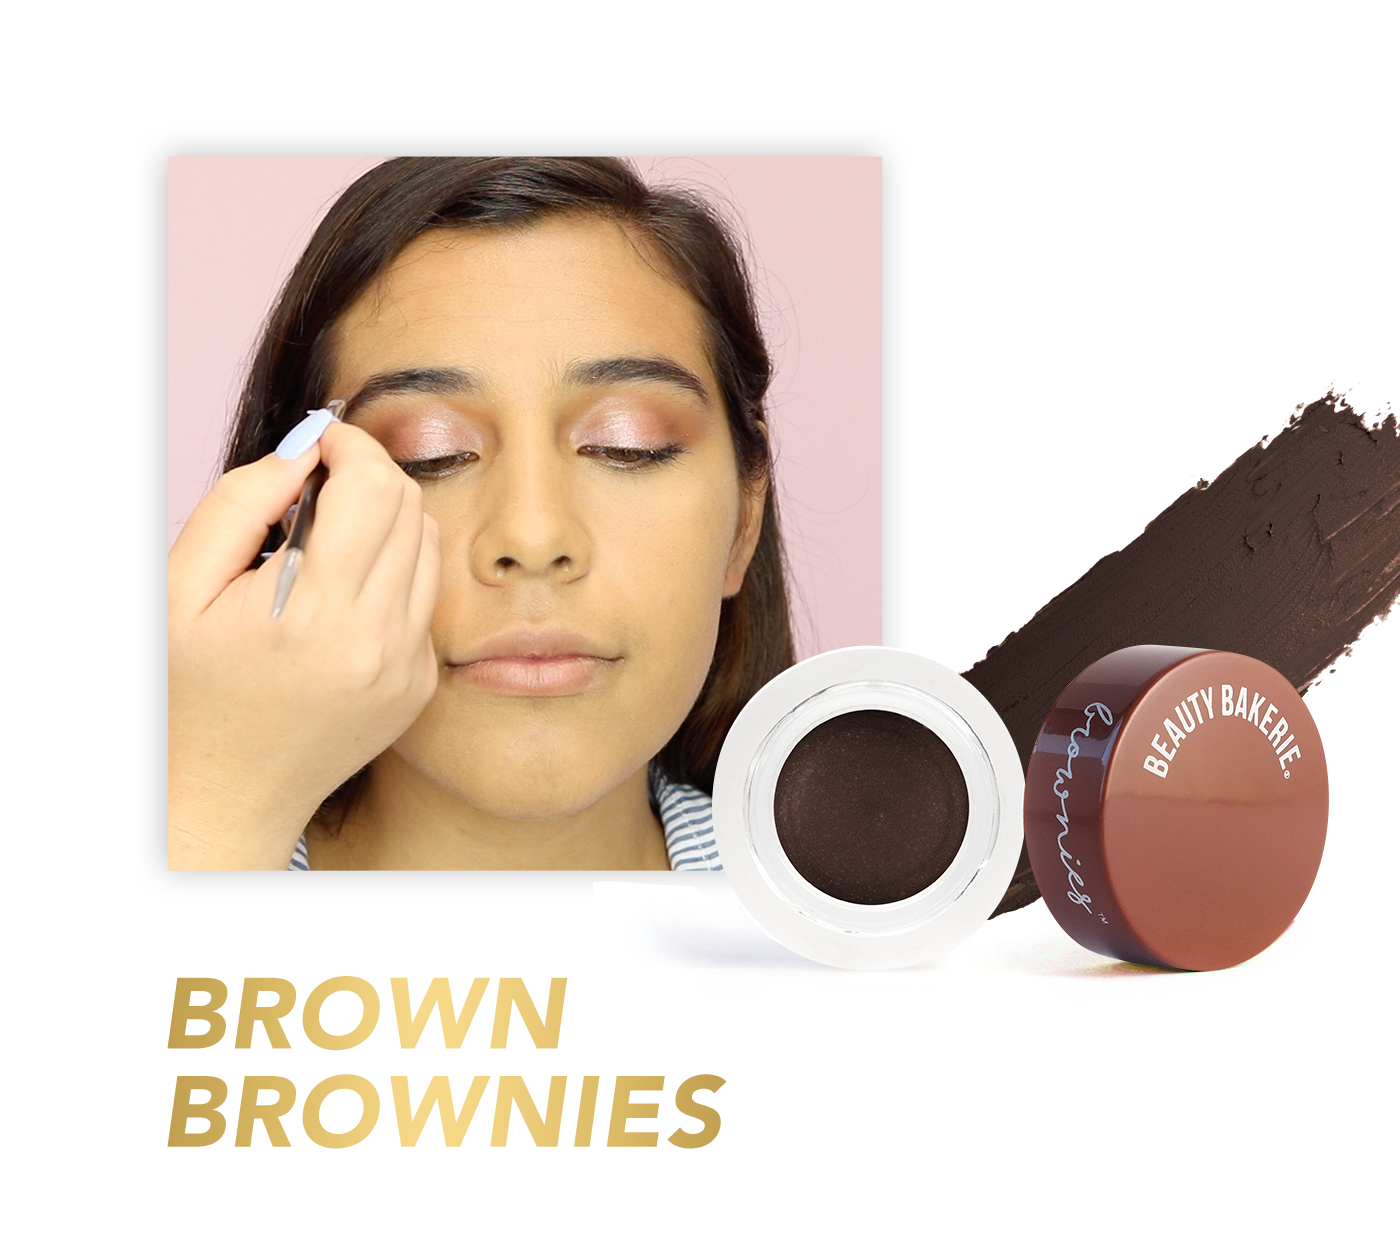 Brown BROWnies